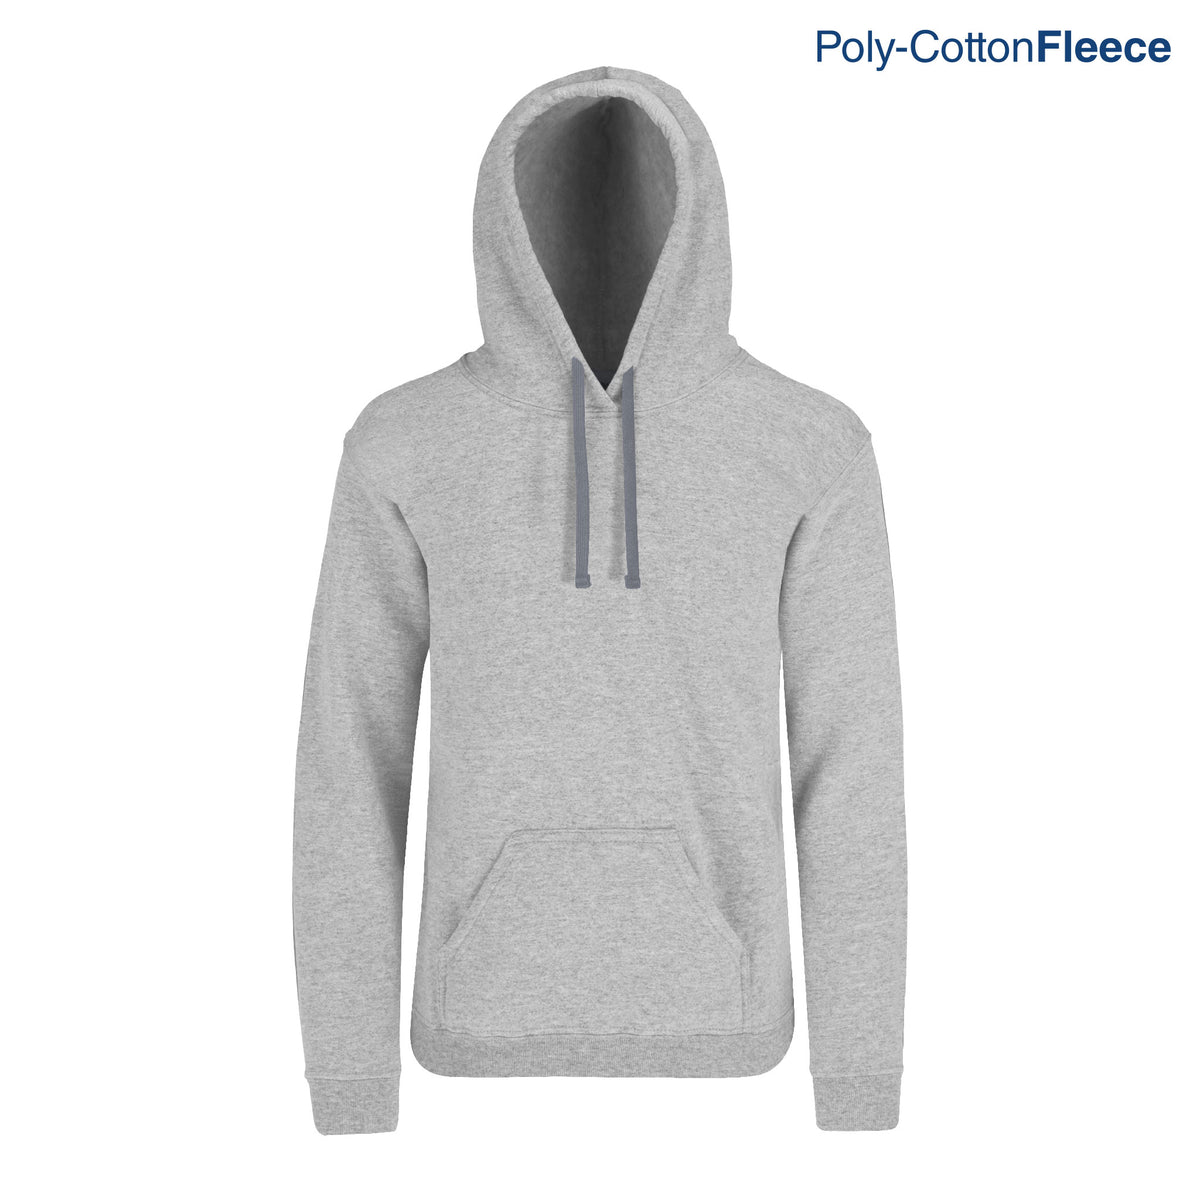 Adult’s Unisex Hooded Sweatshirt With Kangaroo Pocket (Heather Grey ...